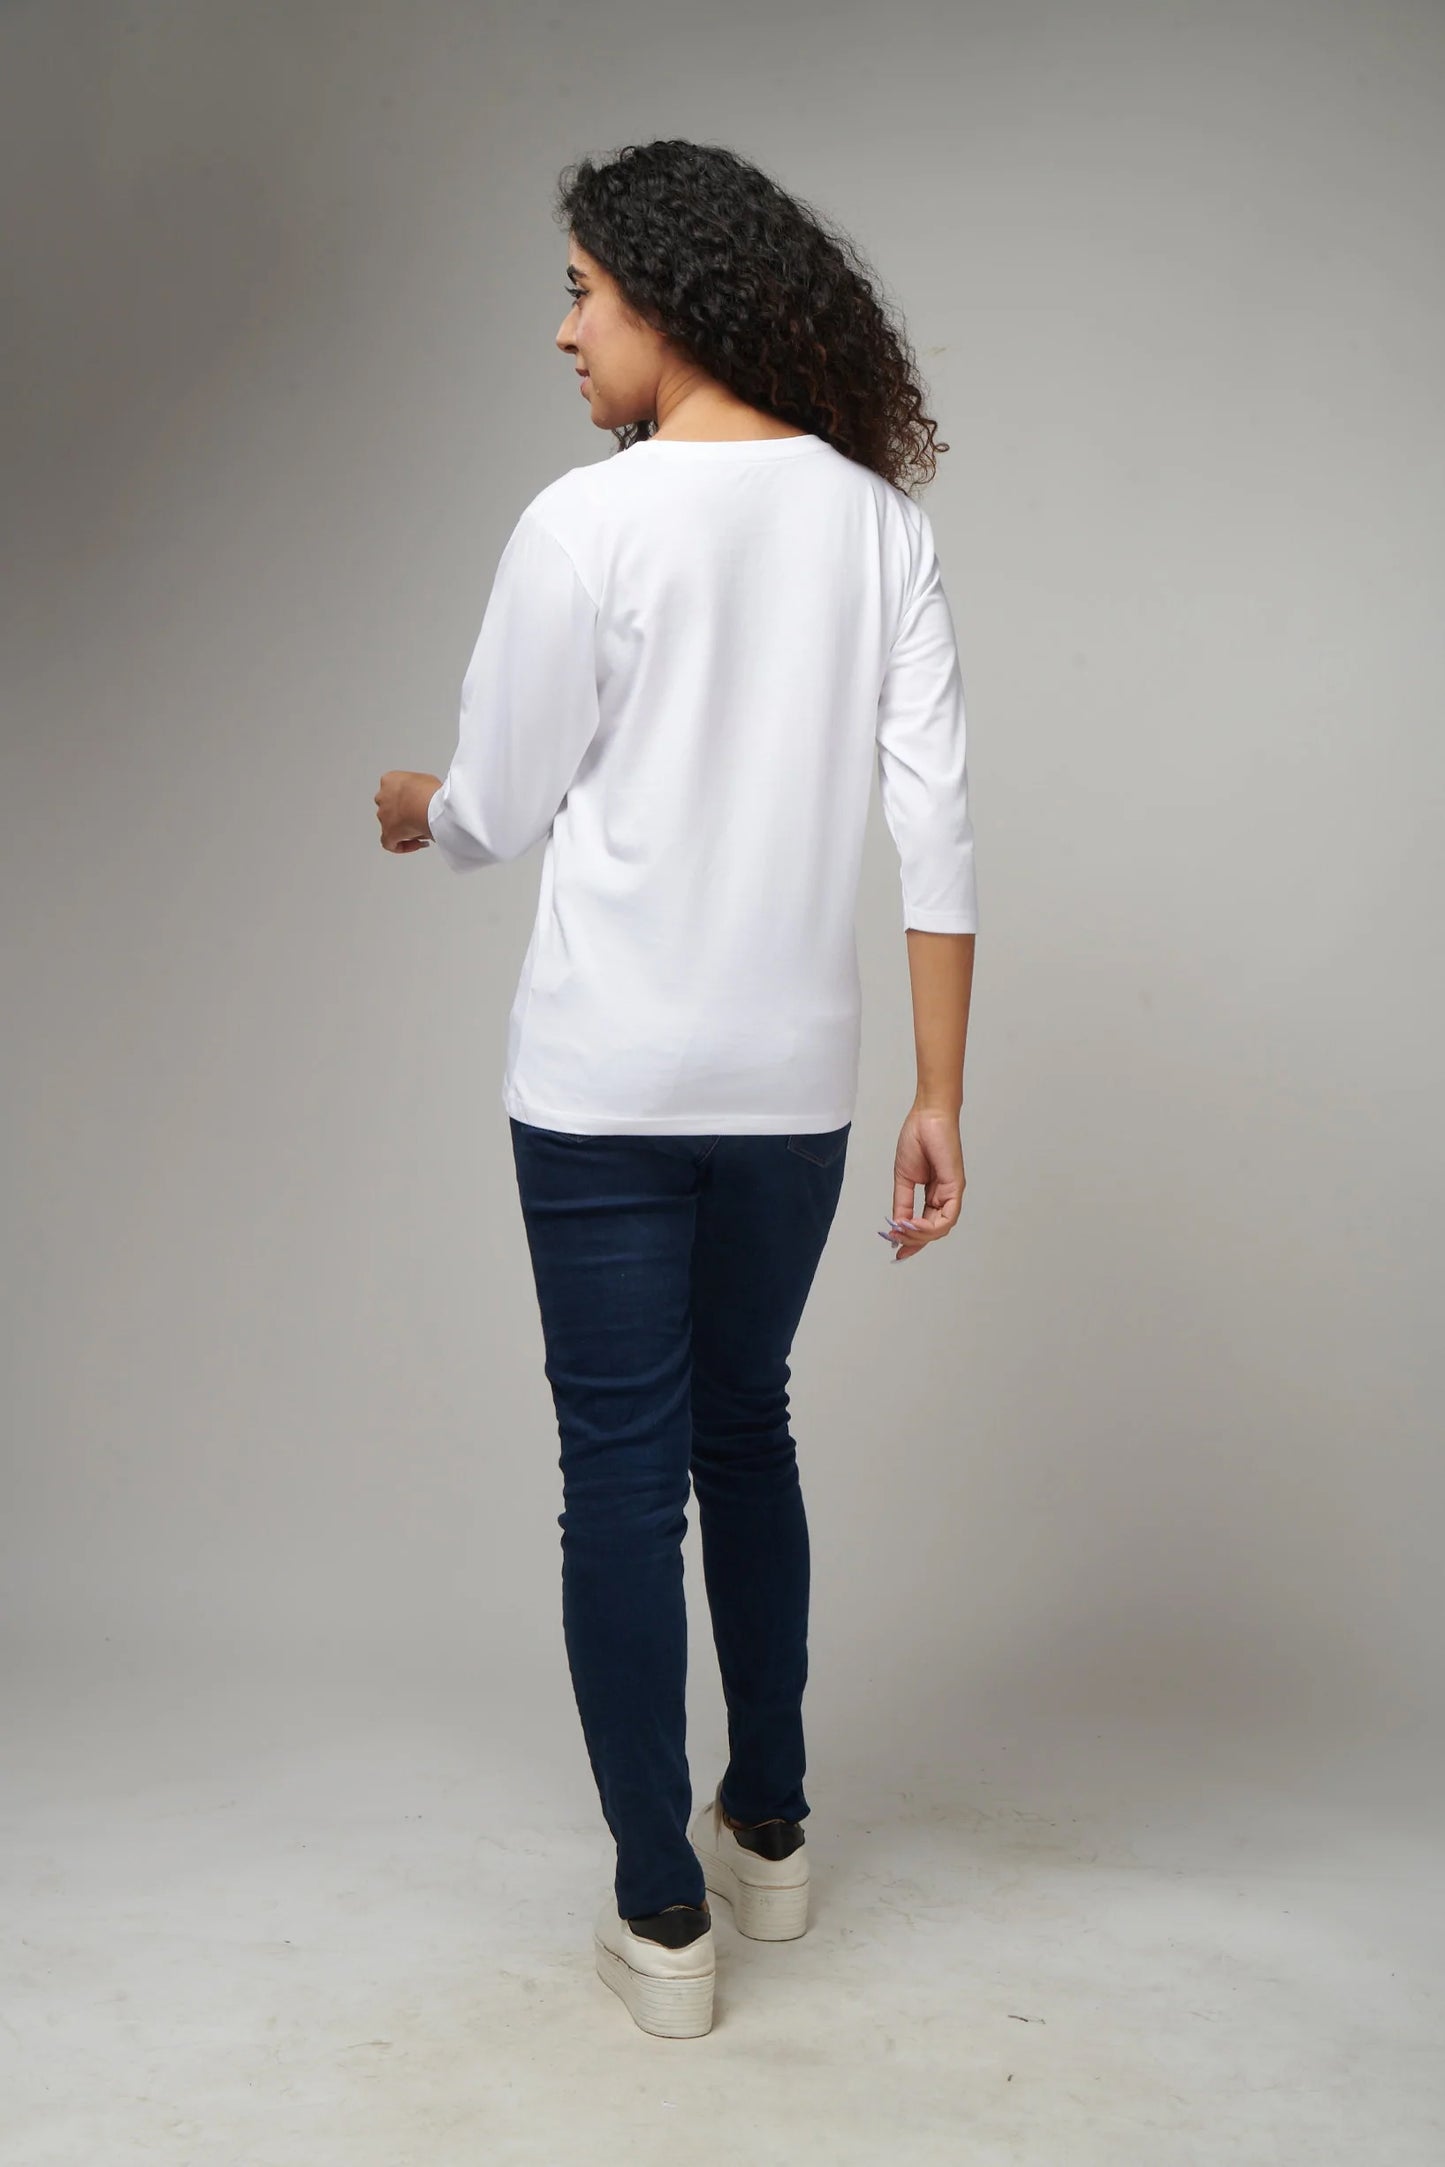 Women's Basic White Full Sleeves T-Shirt